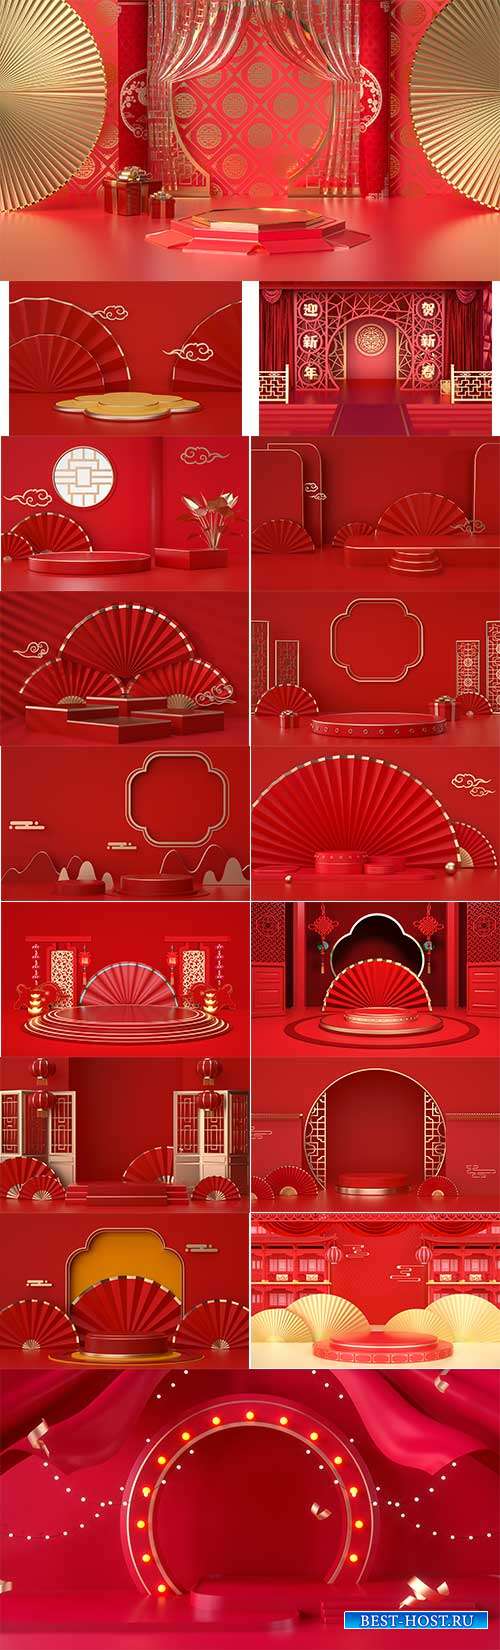 Подиум с элементами китайского стиля на красном фоне - Растровые фоны